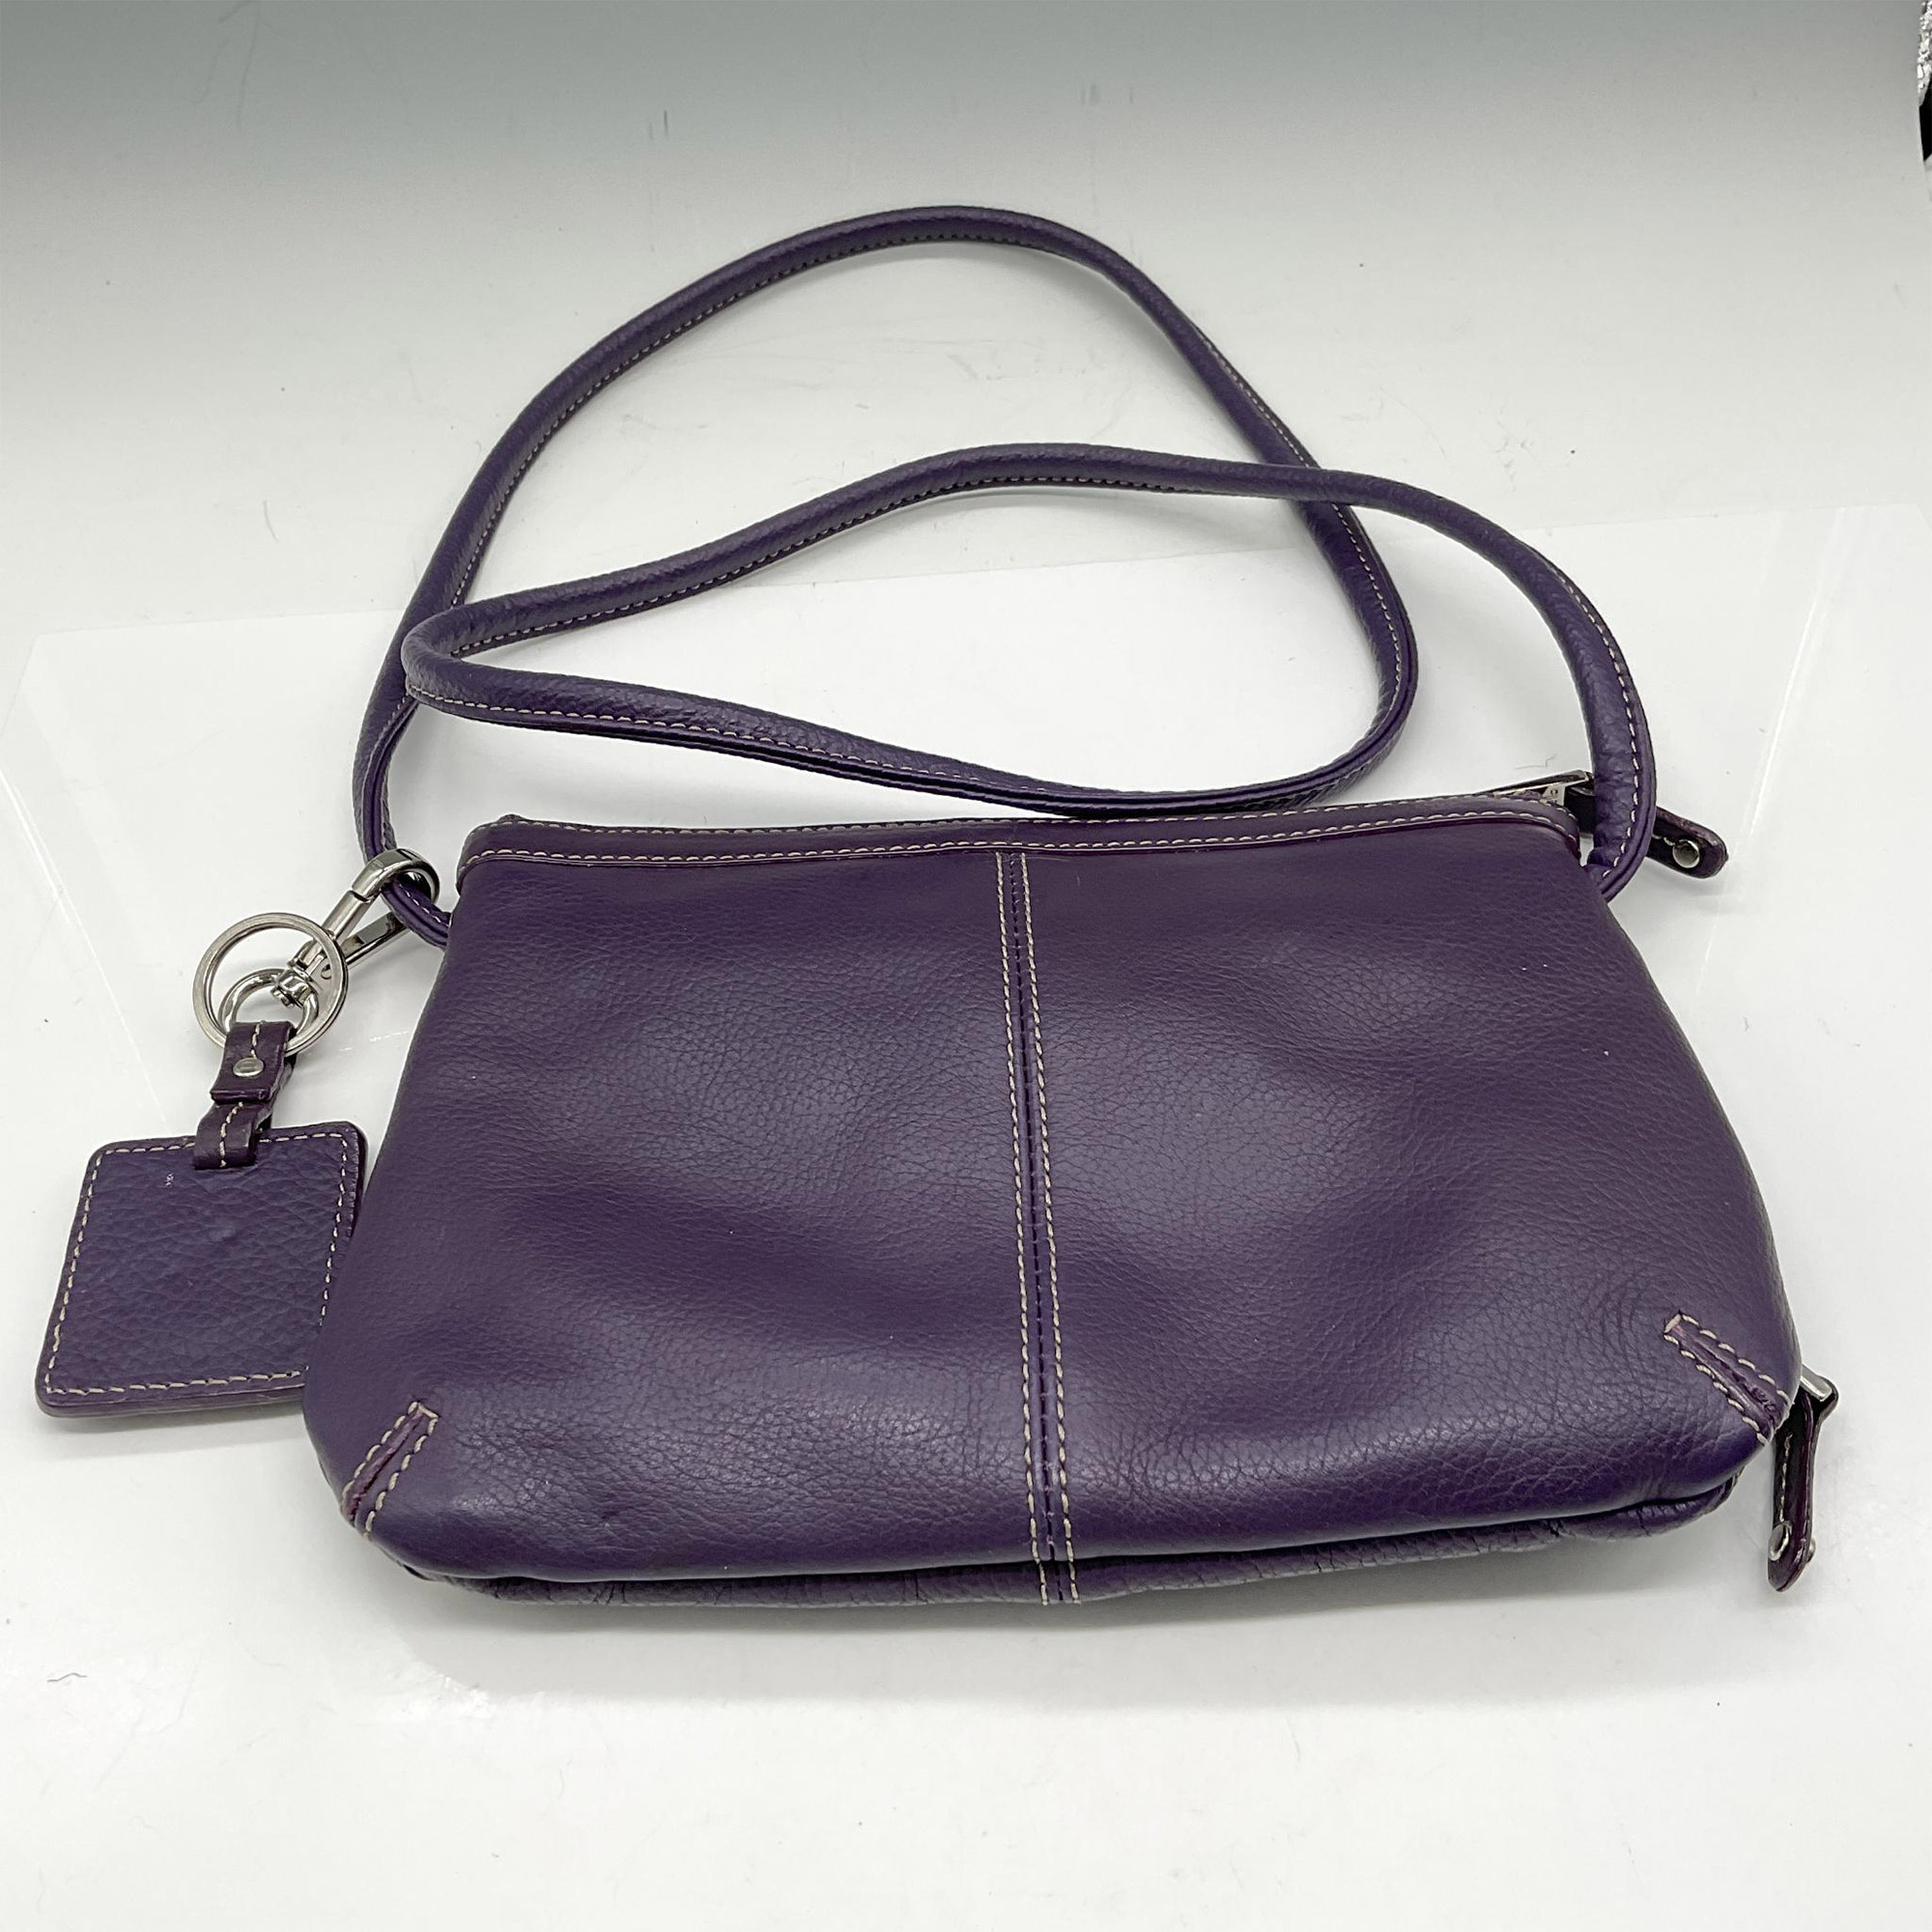 2pc Tignanello Purple Cross Body Bag + Canvas Tote - Image 3 of 6